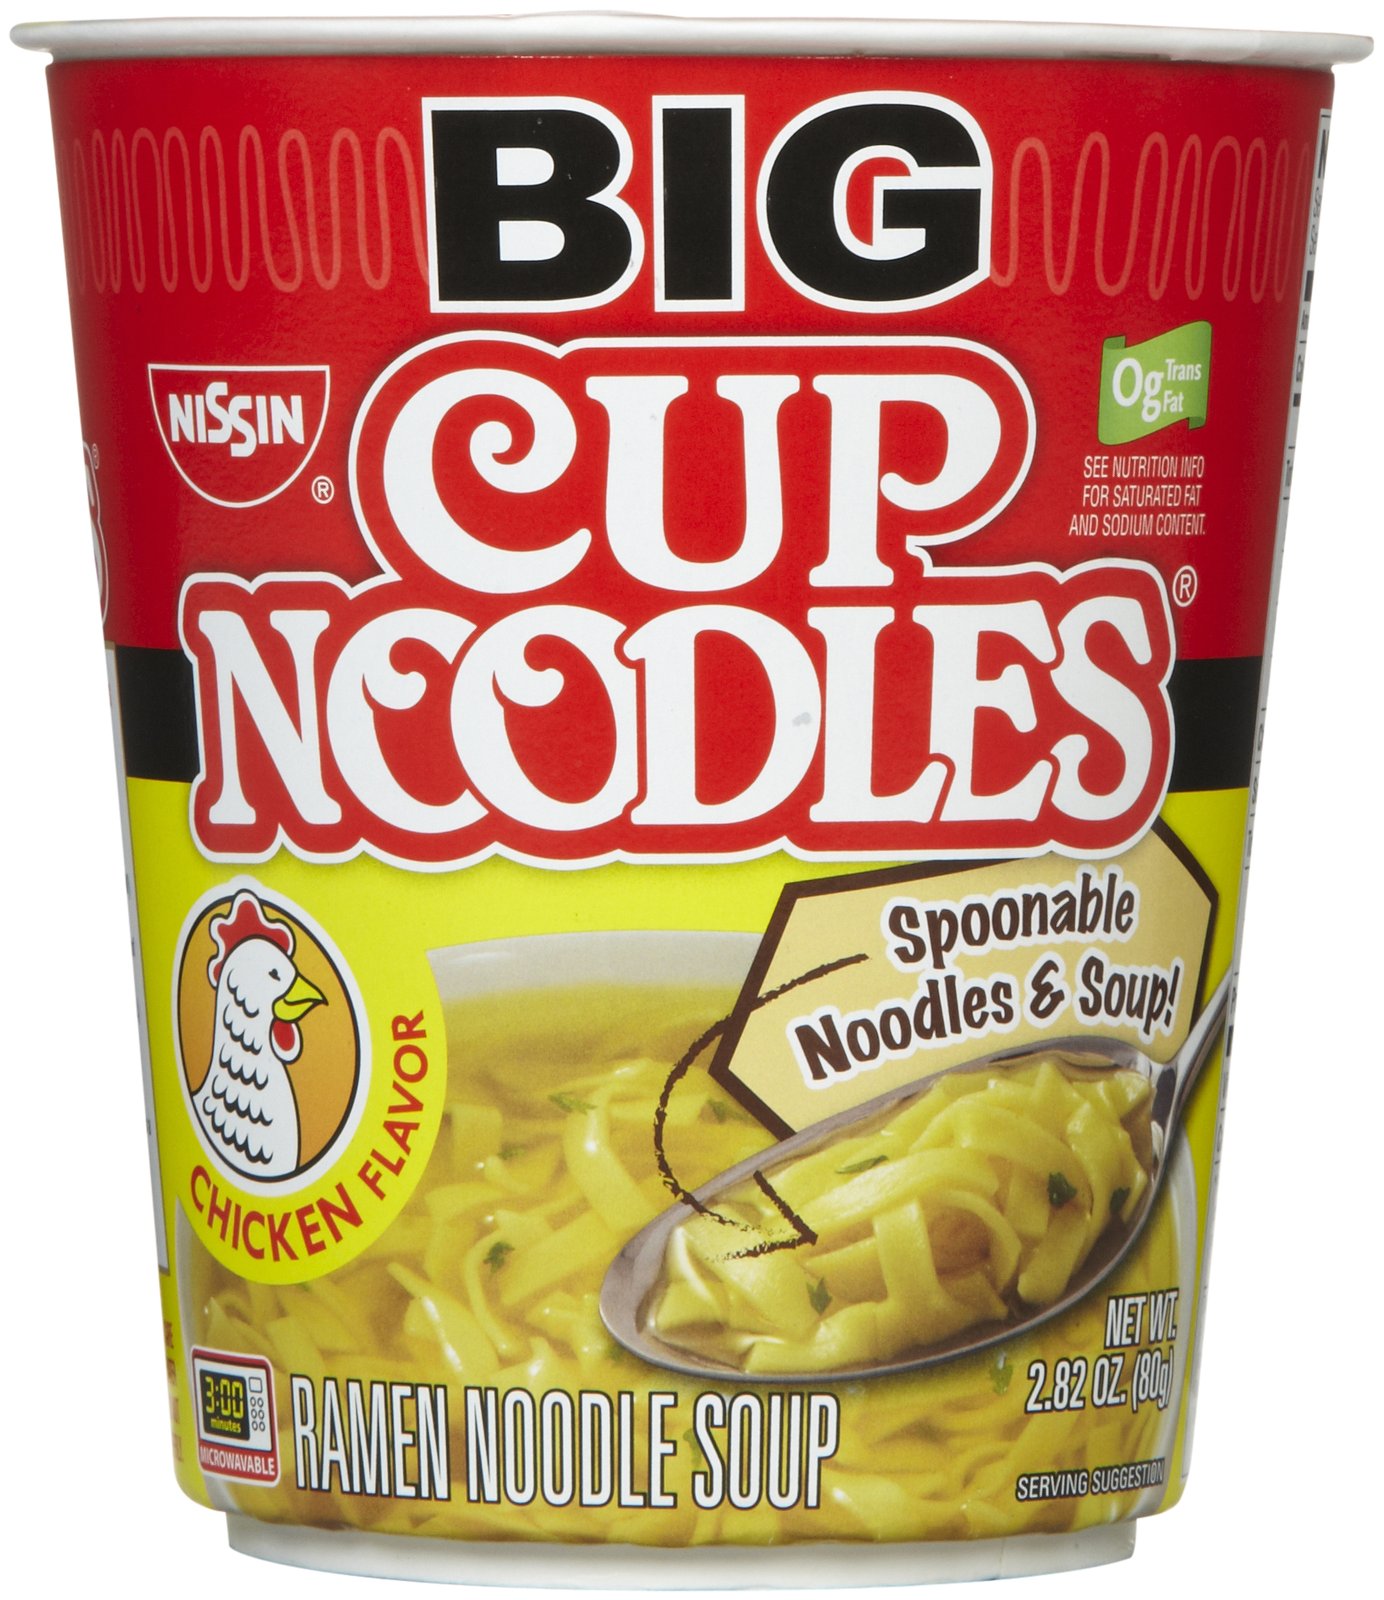 Possible 4 FREE Nissin Big Cup Noodles at Publix